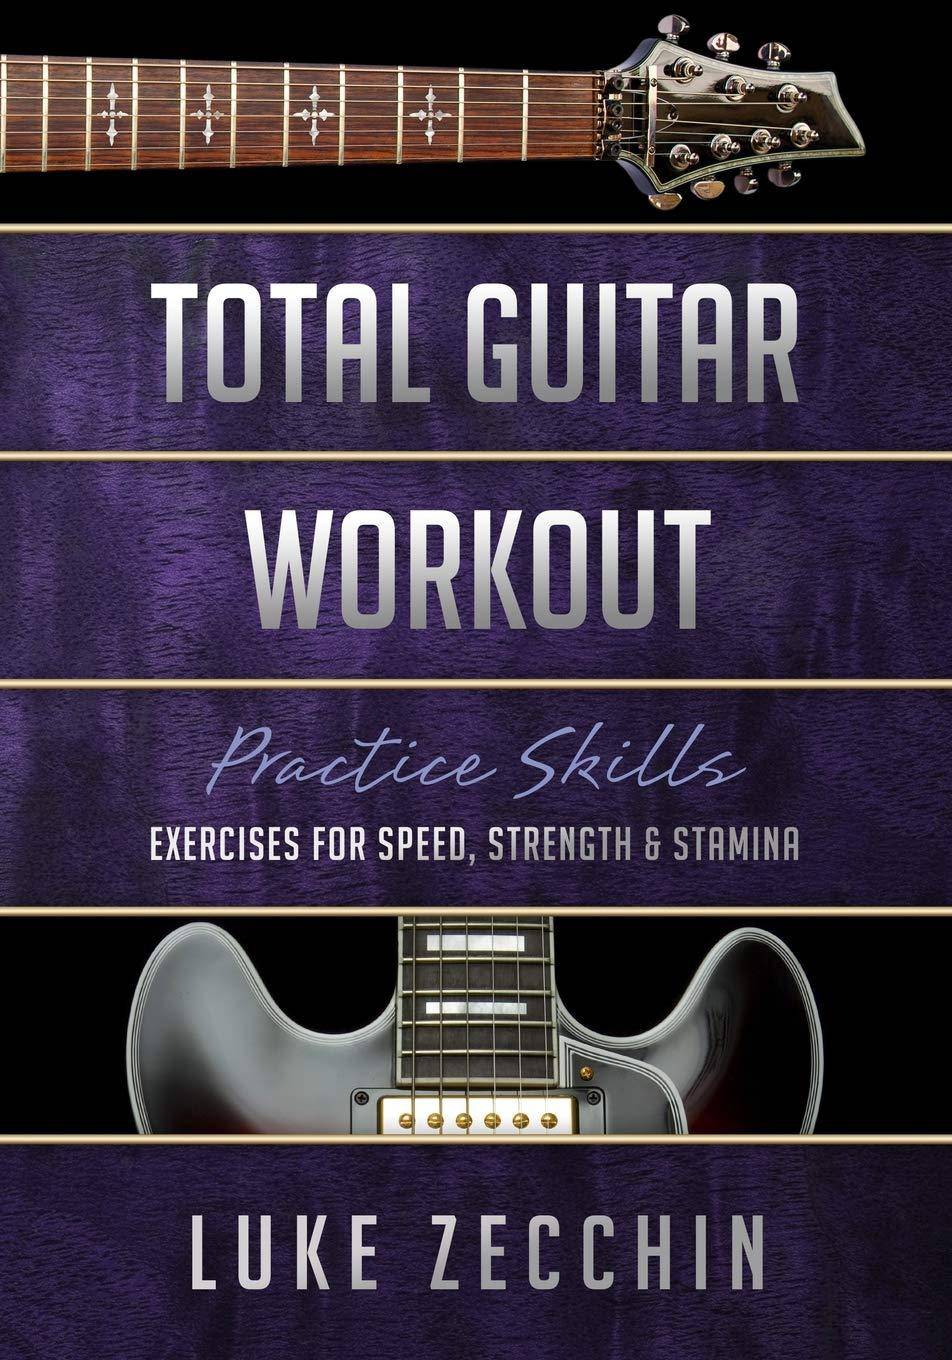 Total Guitar Workout - SureShot Books Publishing LLC